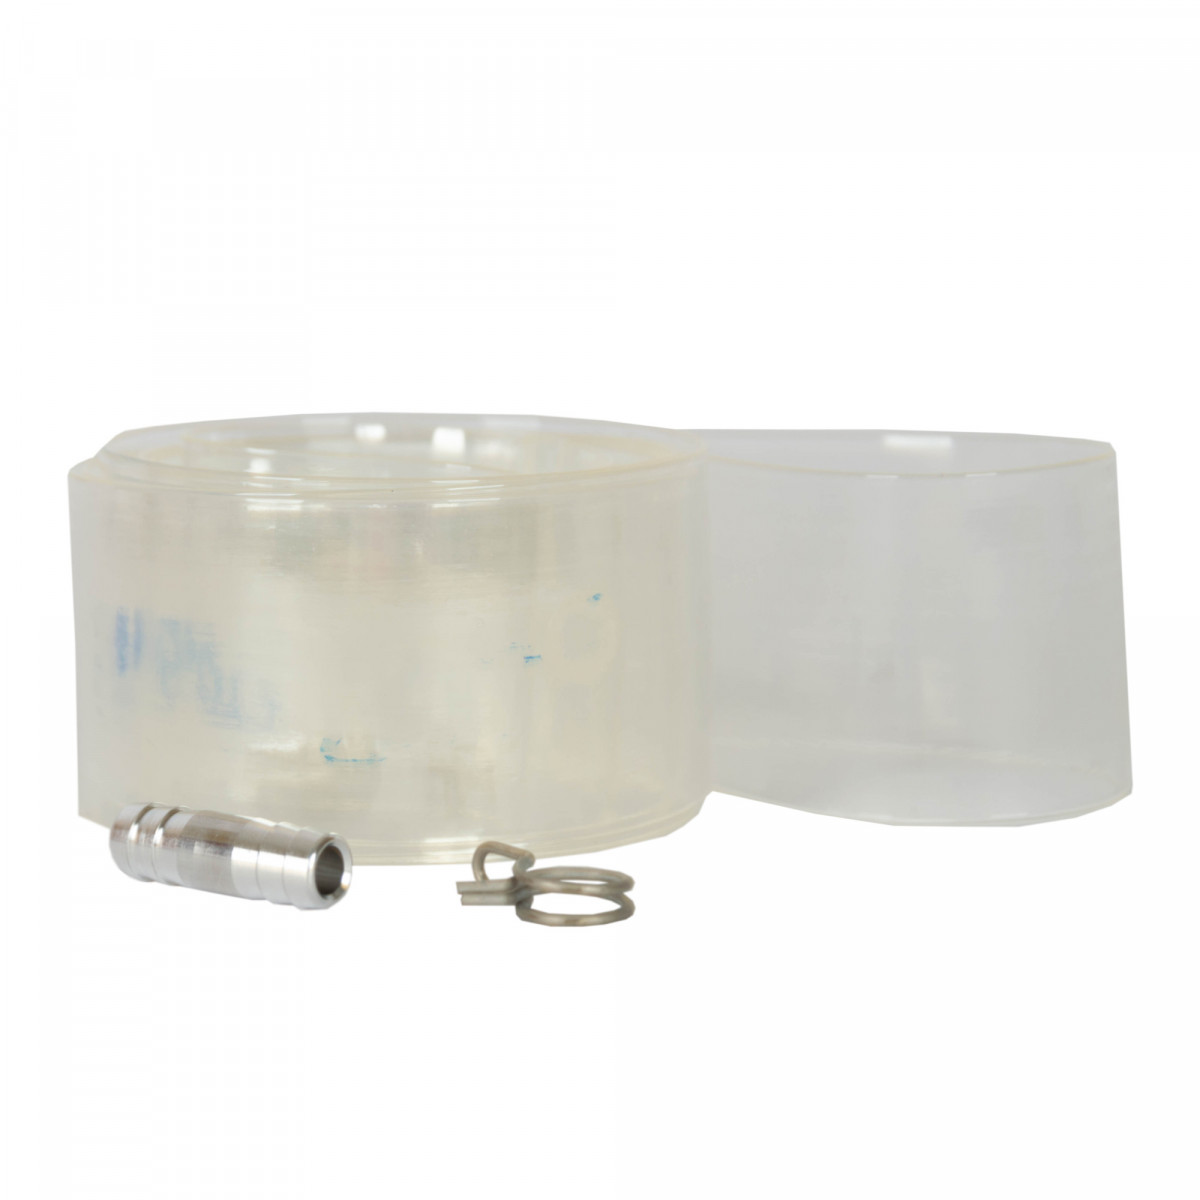 Luftschlauch für Schwimmdeckel für Behälter 200-300 l